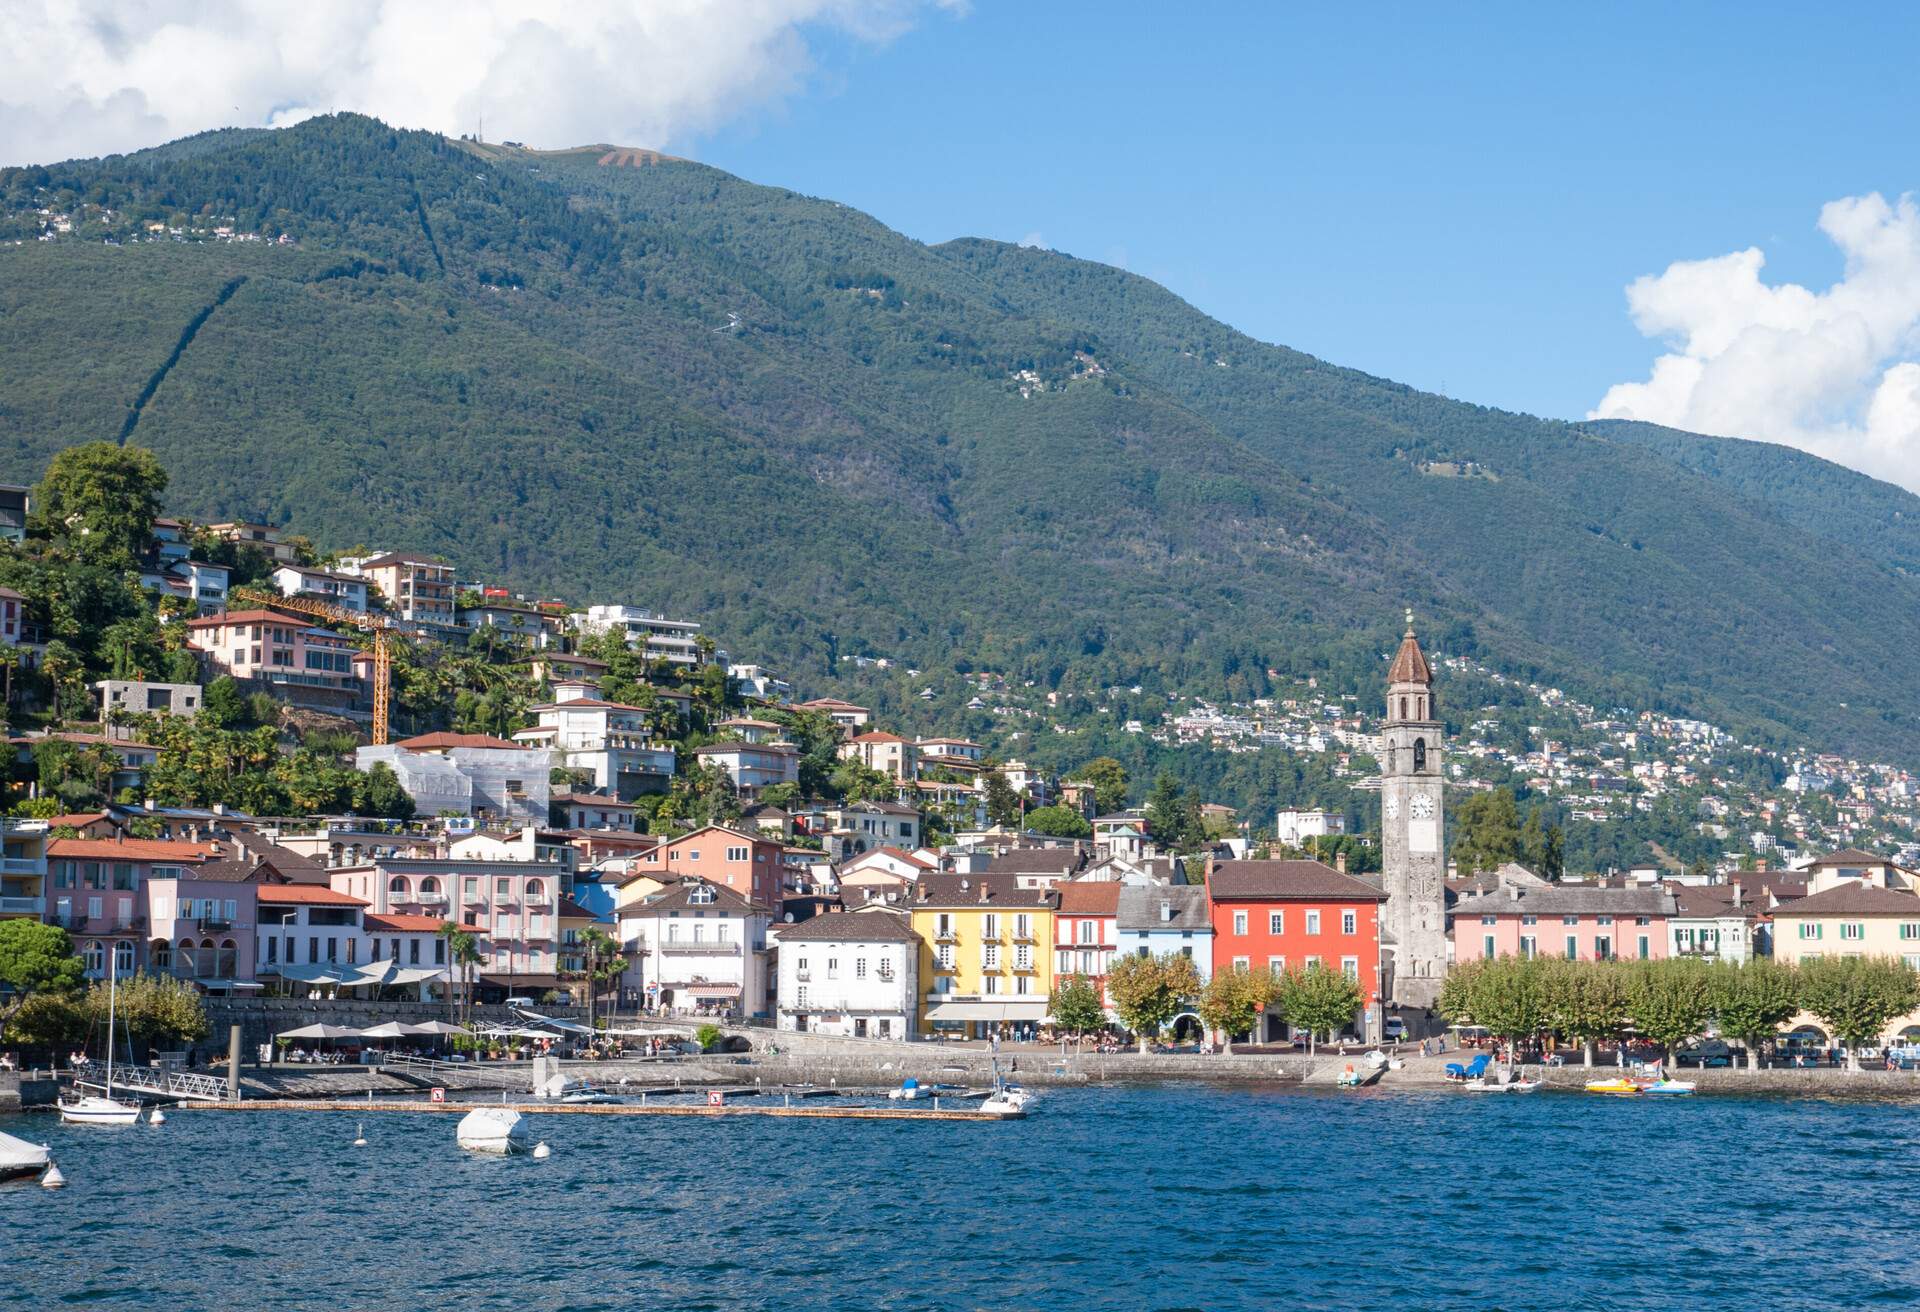 Locarno best view in summer Switzerland Alps and Italian Alps Lago Maggiore Lake Maggiore best Italy Switzerland ; Shutterstock ID 1485735596